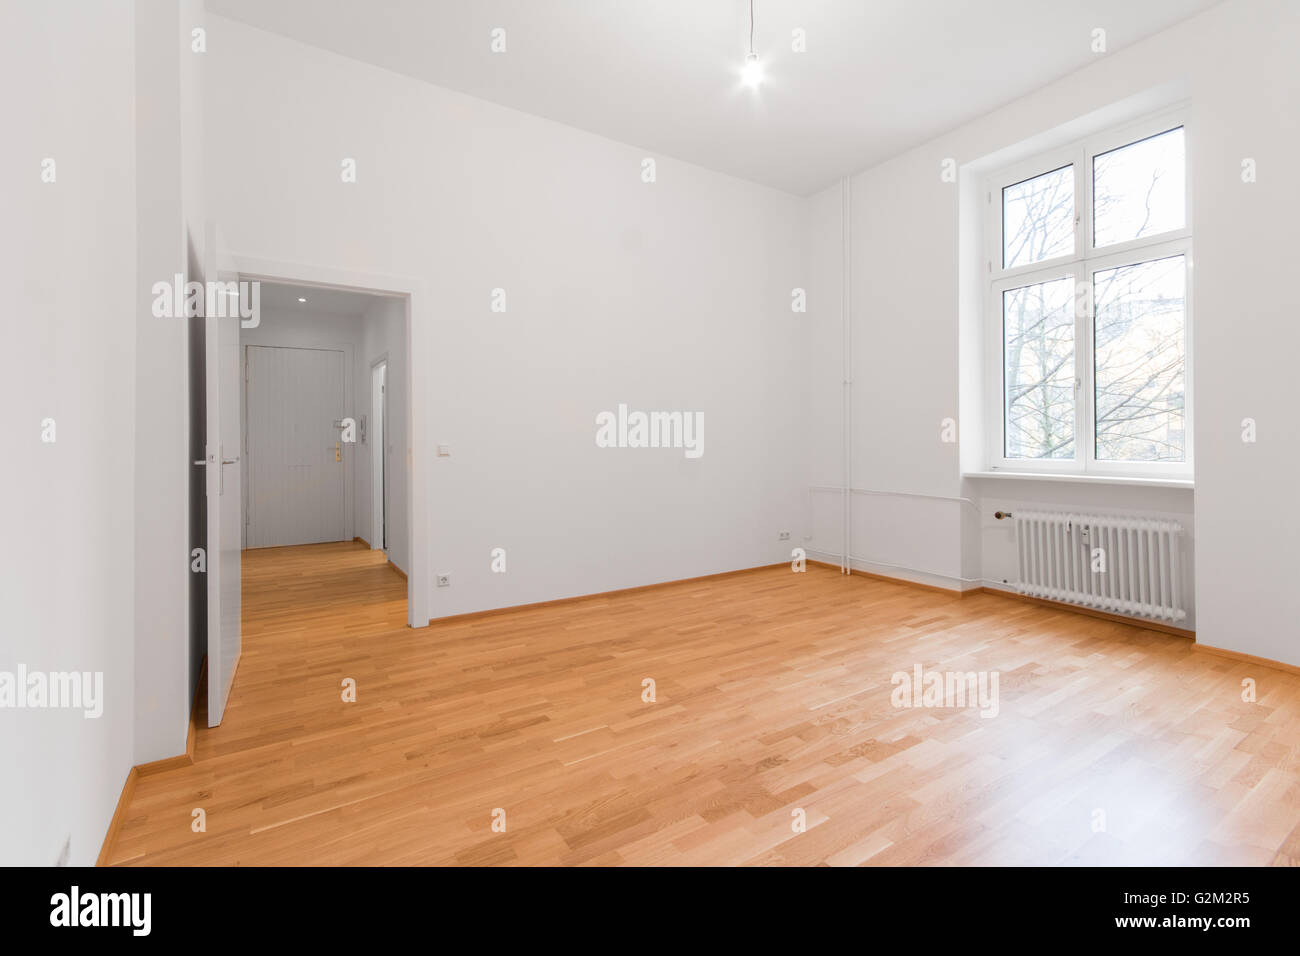 Nouveau rénové appartement / appartement , murs blancs - plancher en bois Banque D'Images